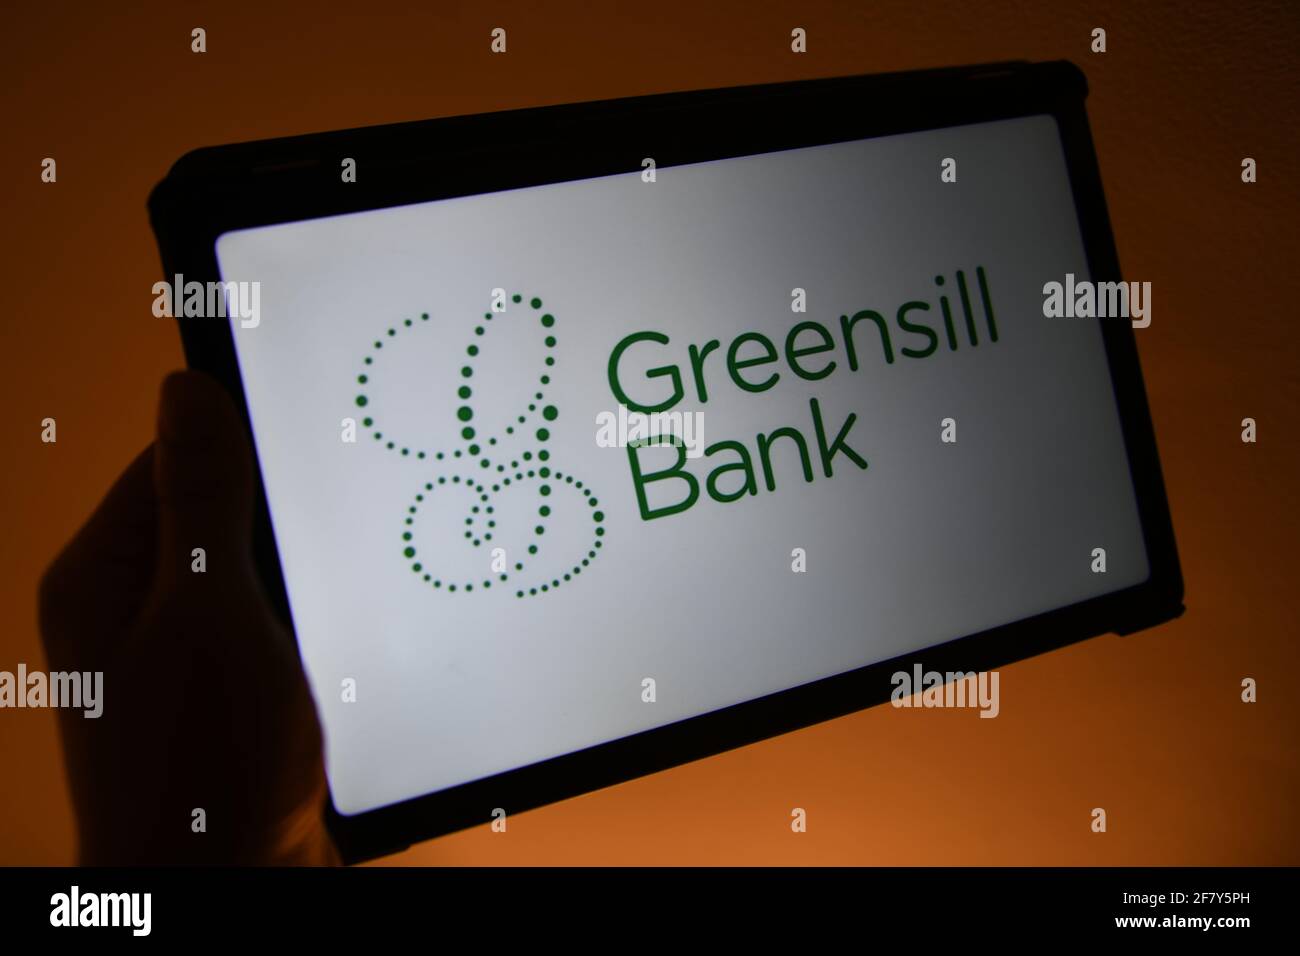 Logotipo de Greensill Bank visto en una tableta Samsung Foto de stock